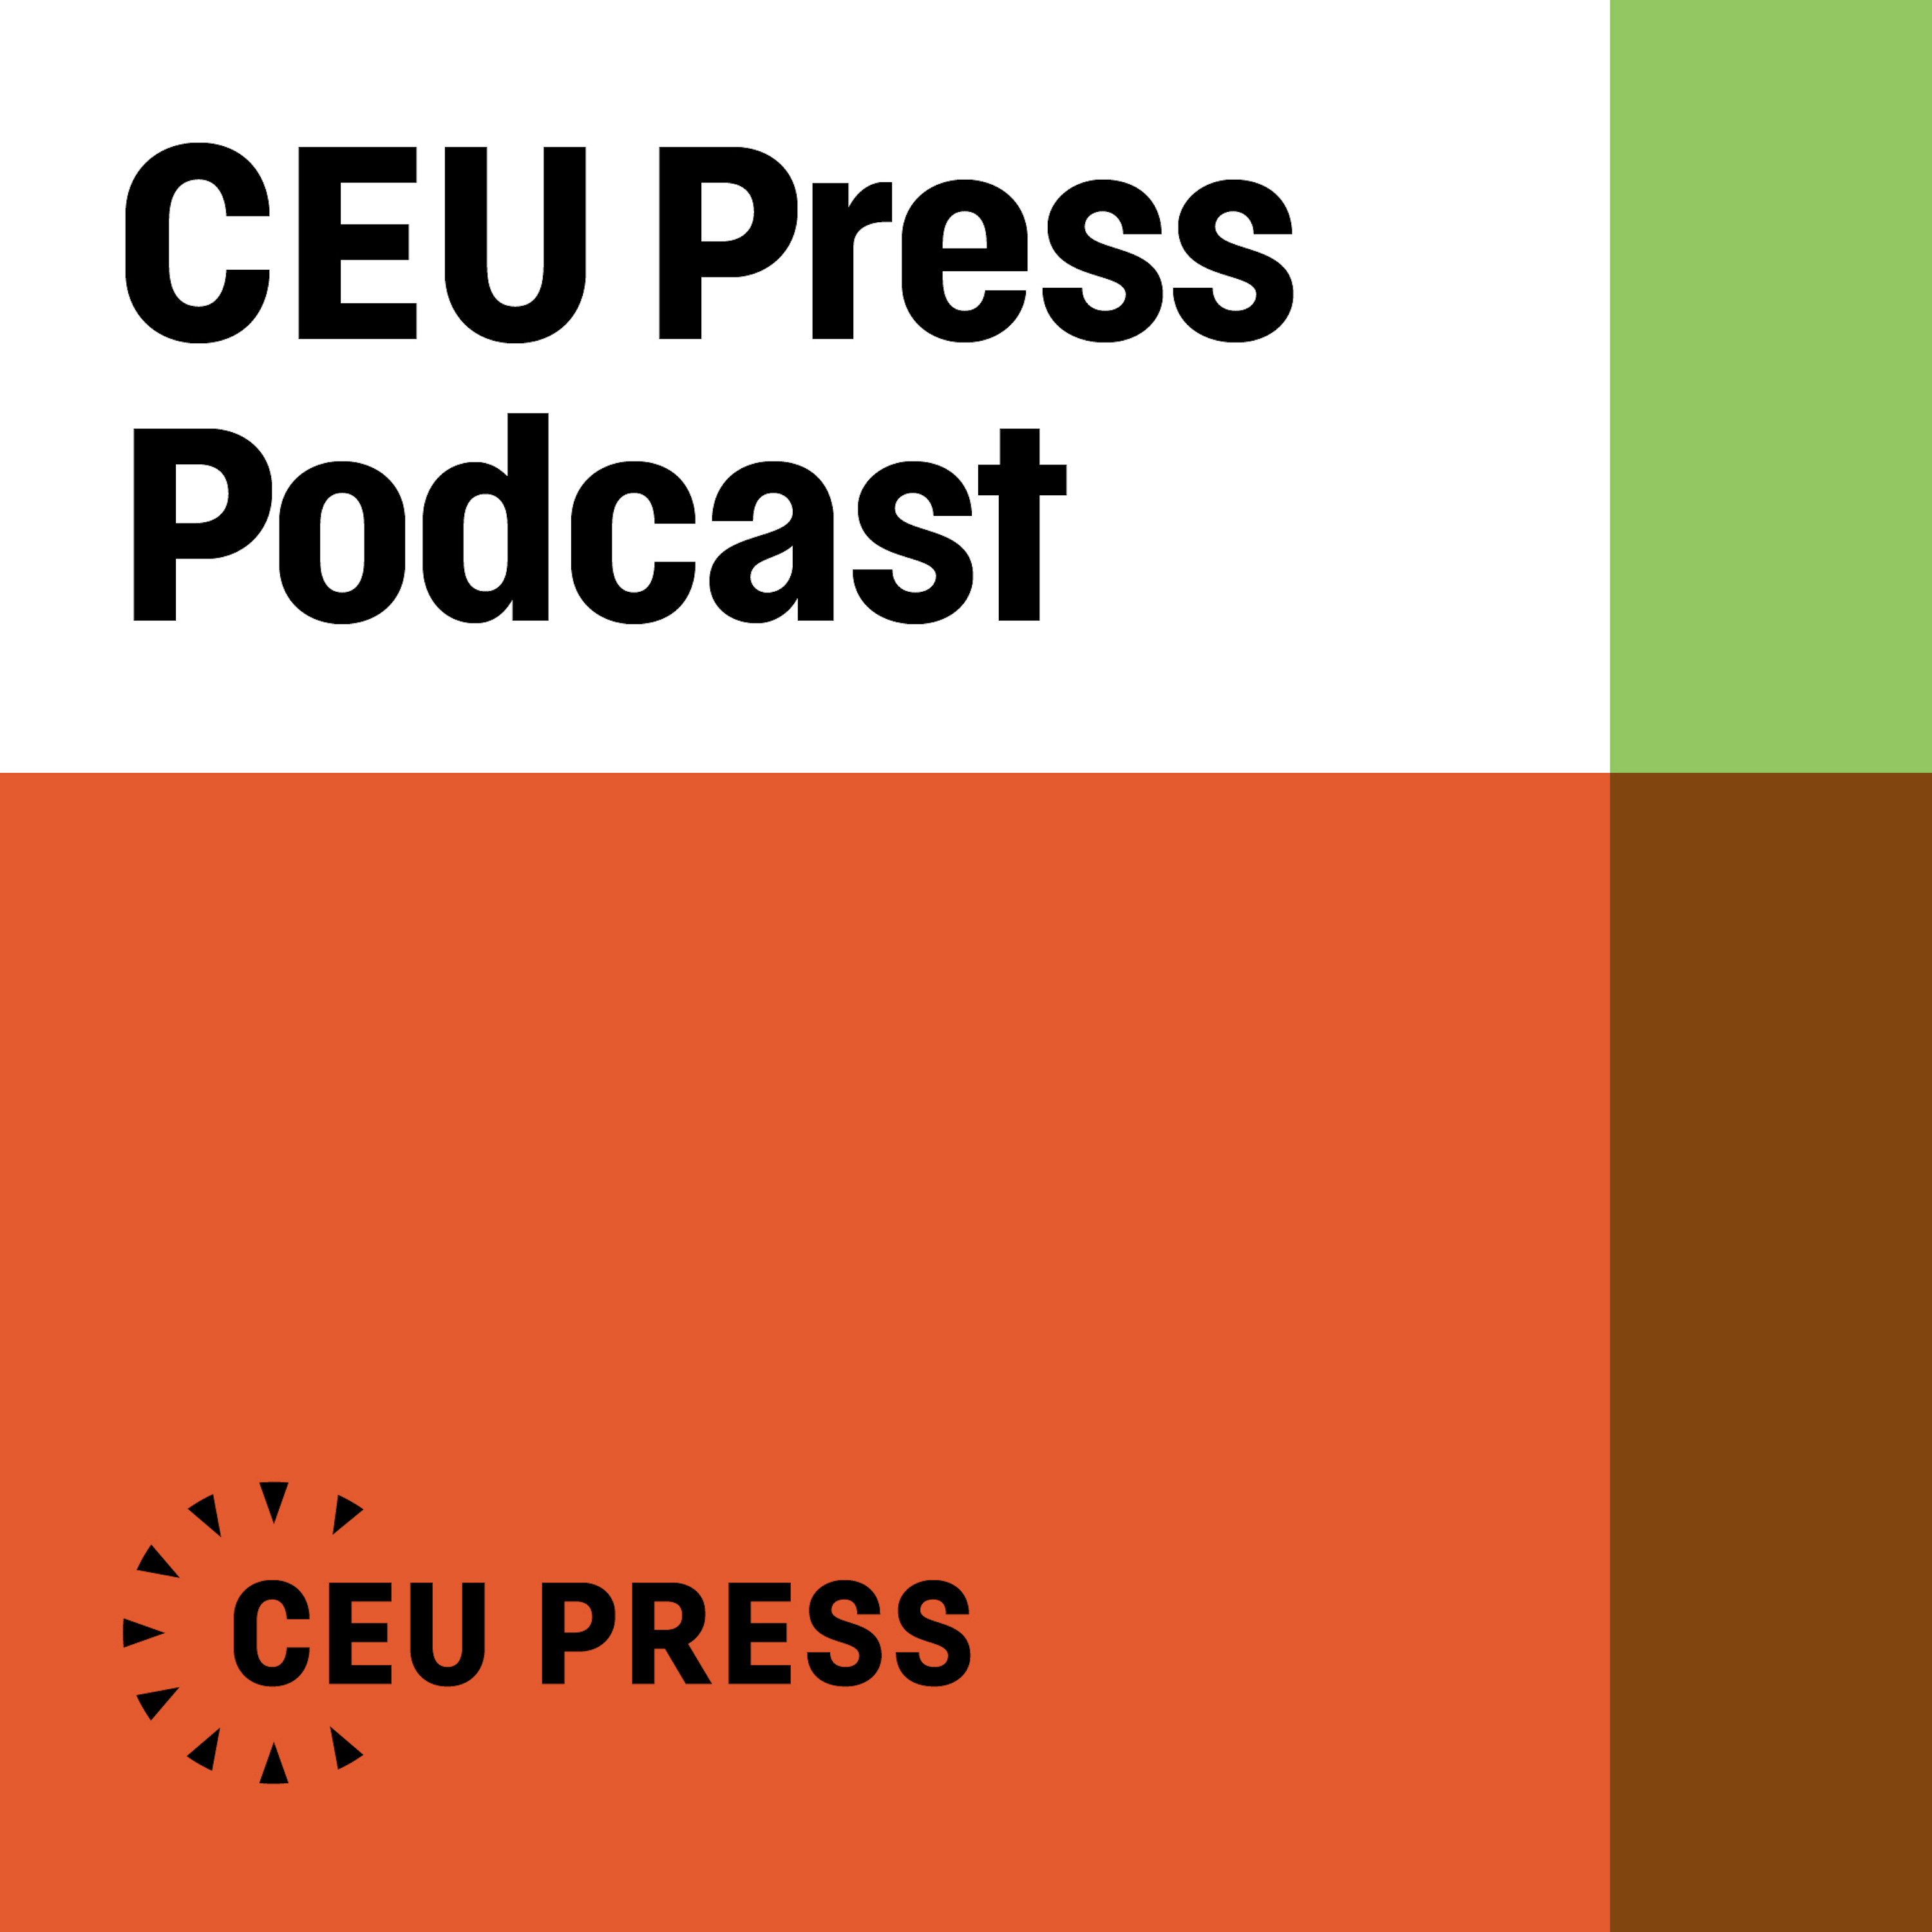 CEU Press Podcast